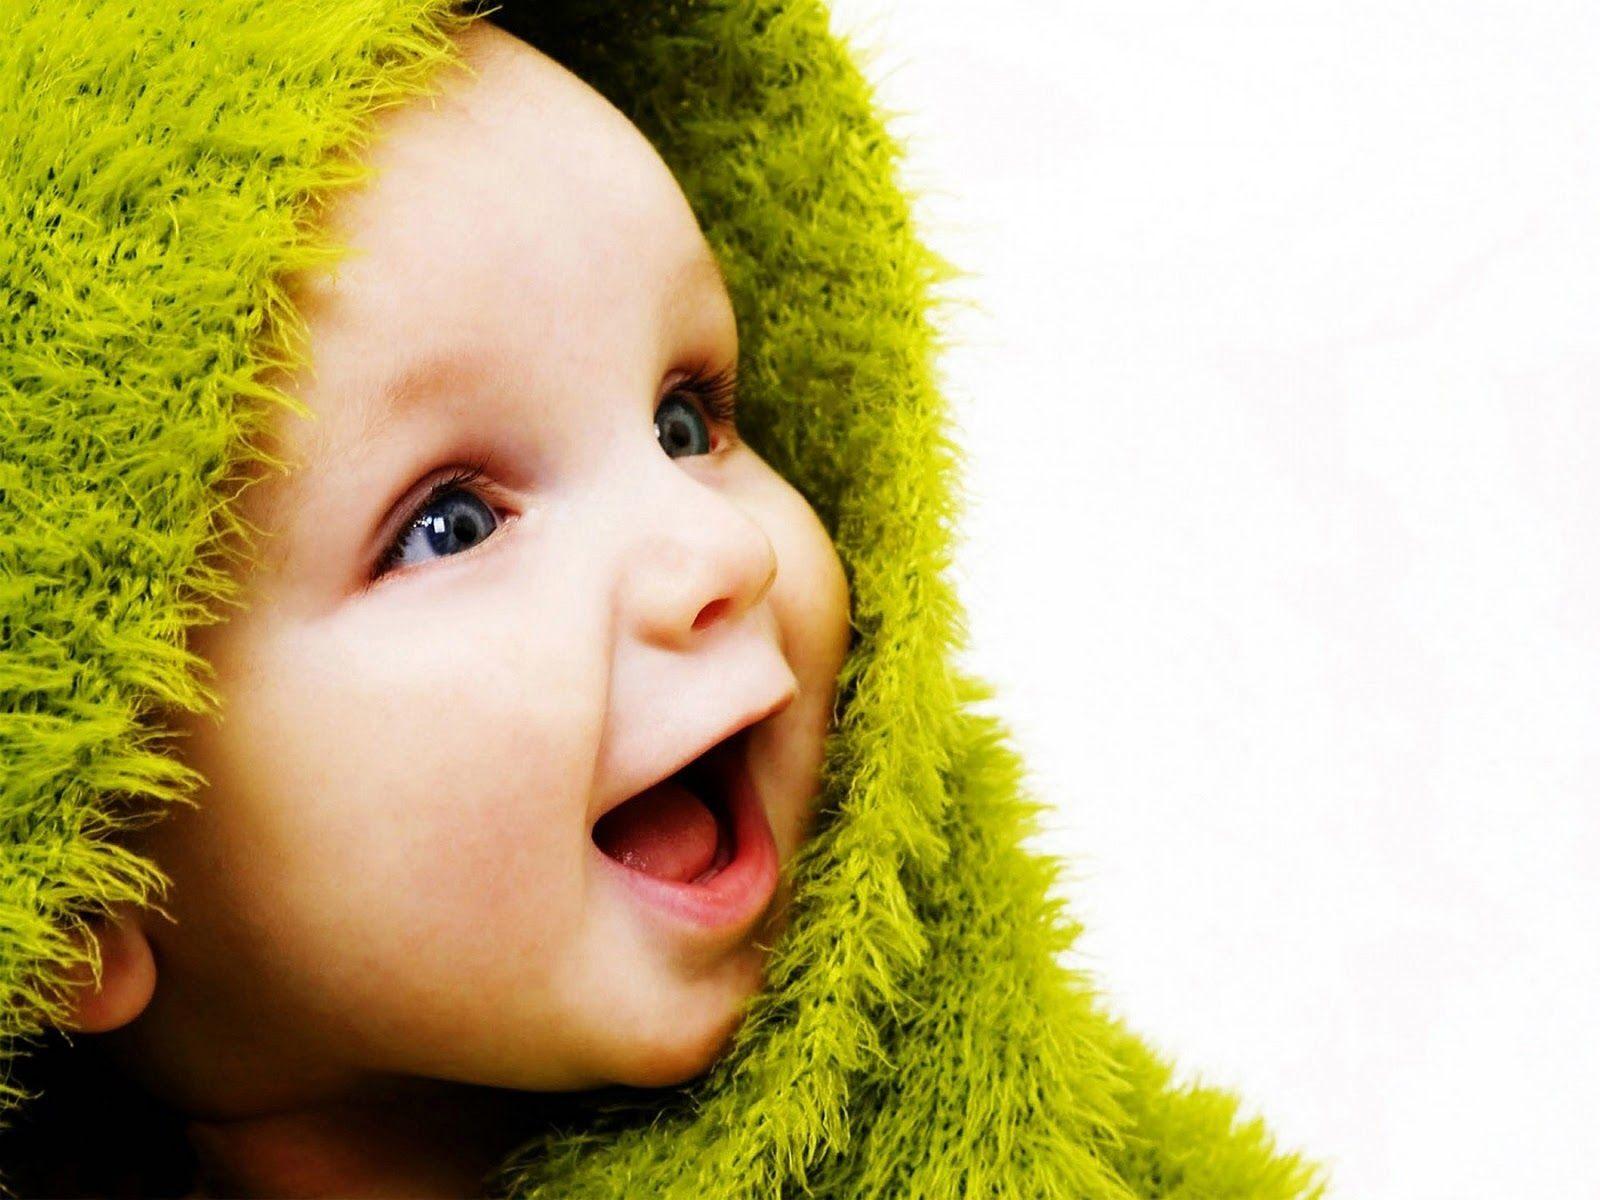 The Best Top Desktop Baby Wallpaper. Baby sounds, Baby wallpaper, Cute baby wallpaper